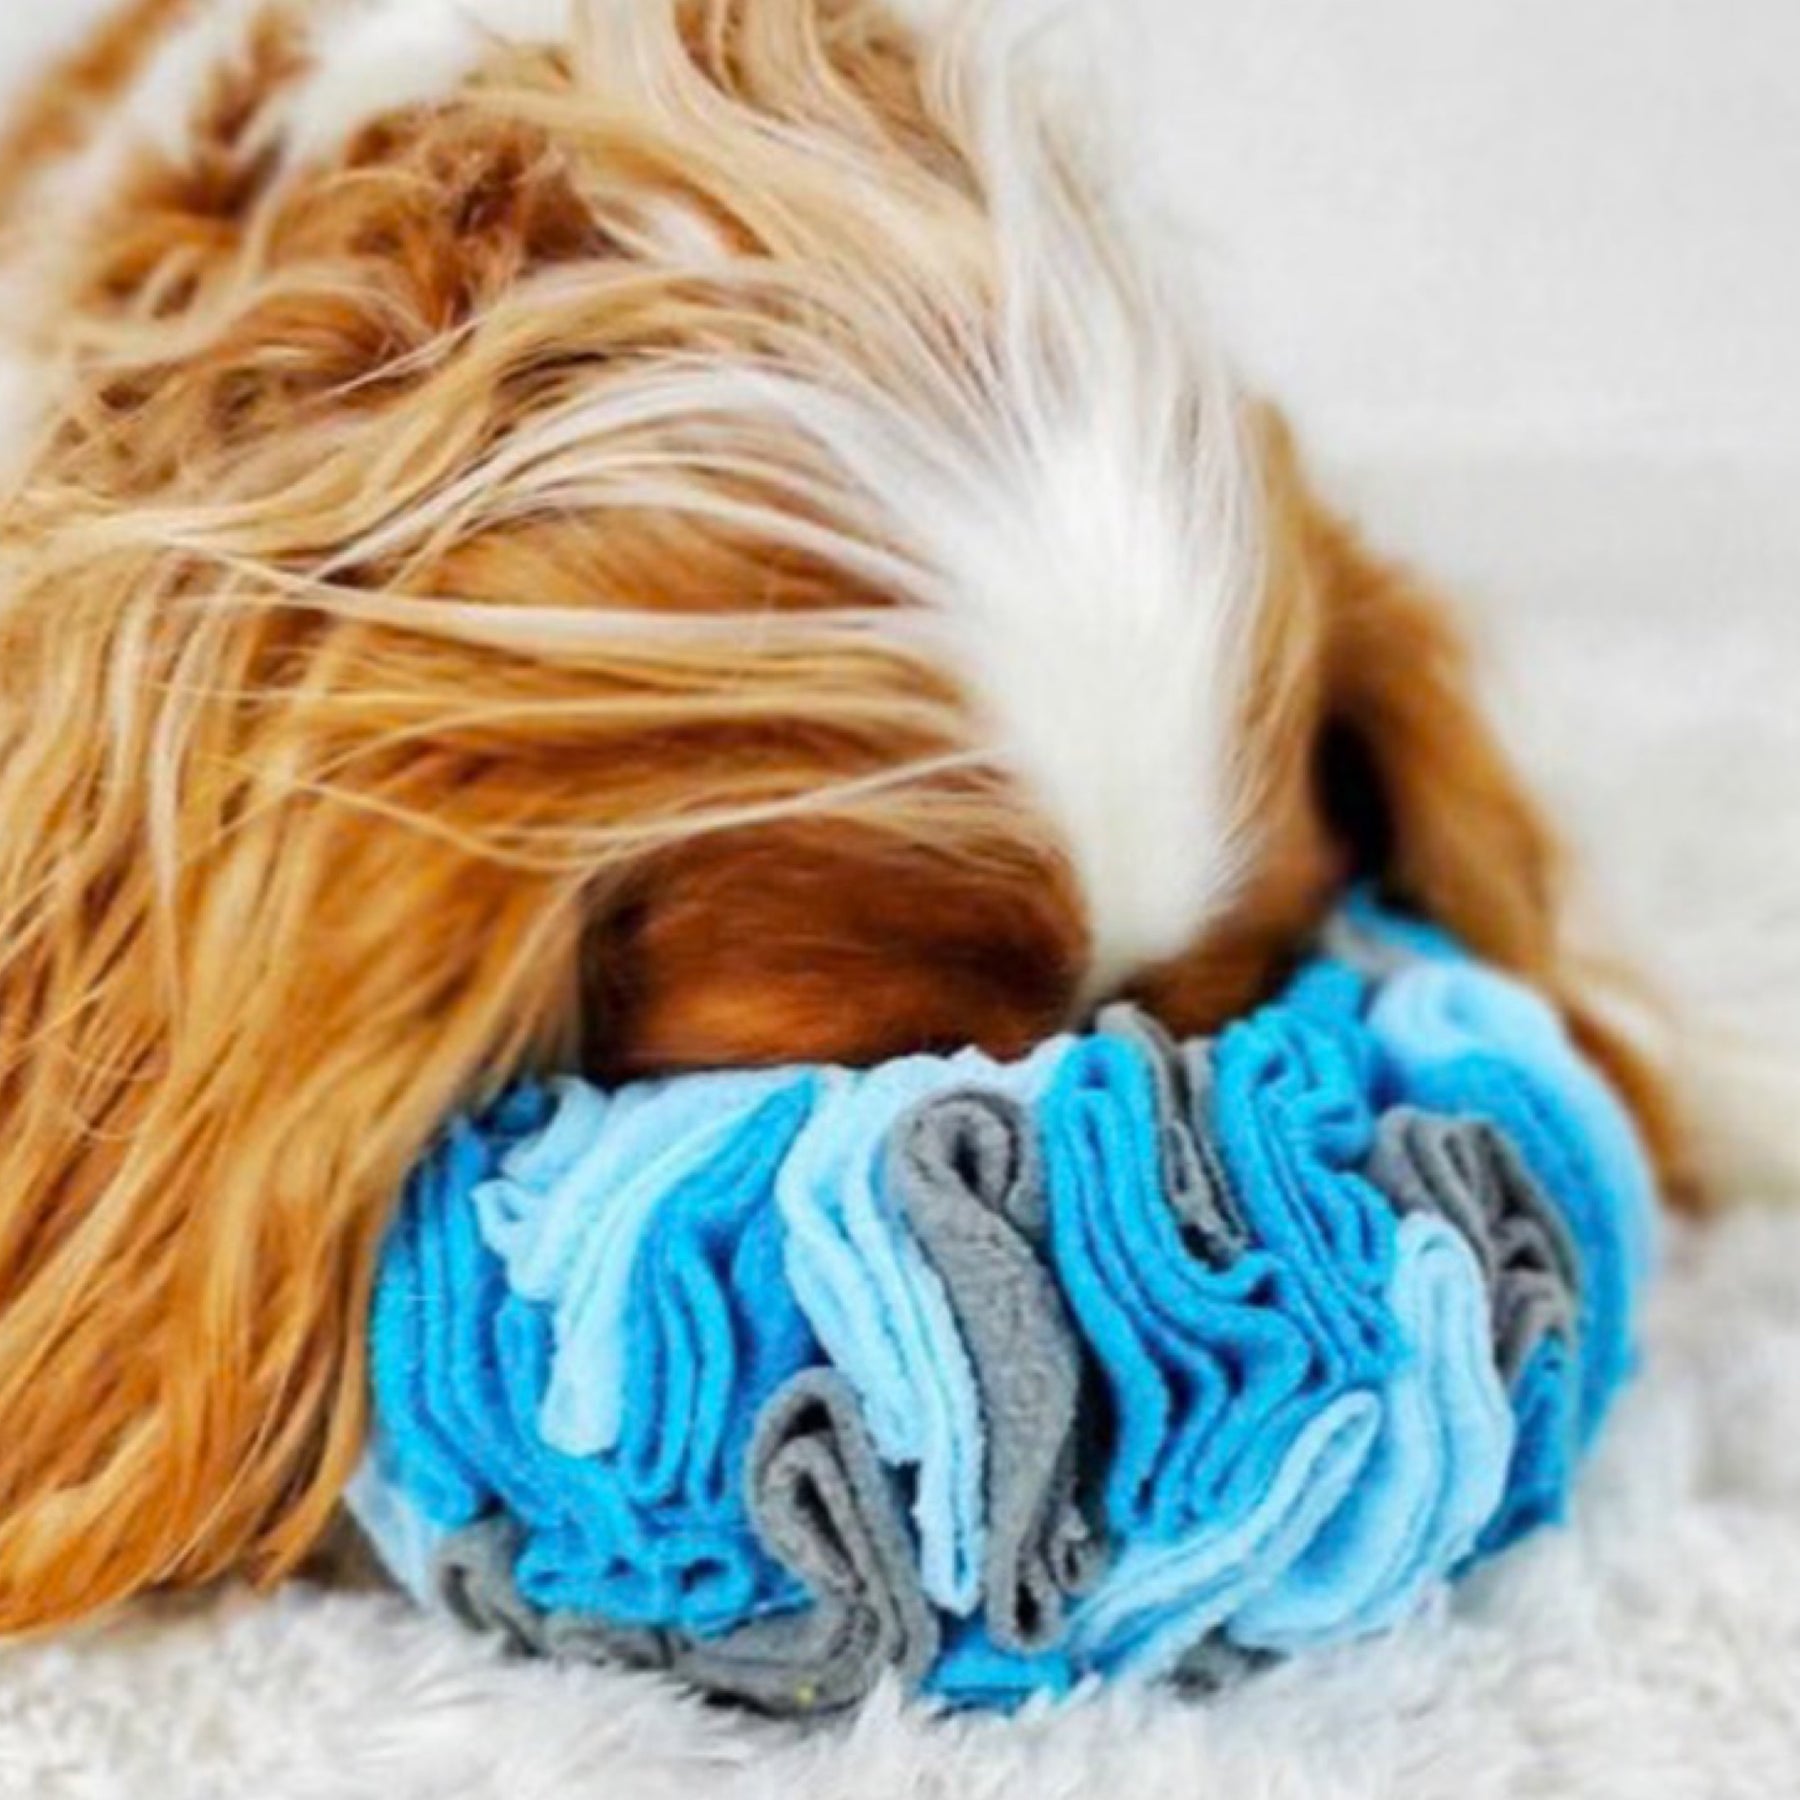 9" Hide'n Seek Snuffle Ring Dog Toy By fouFIT - Hide Treats Inside!